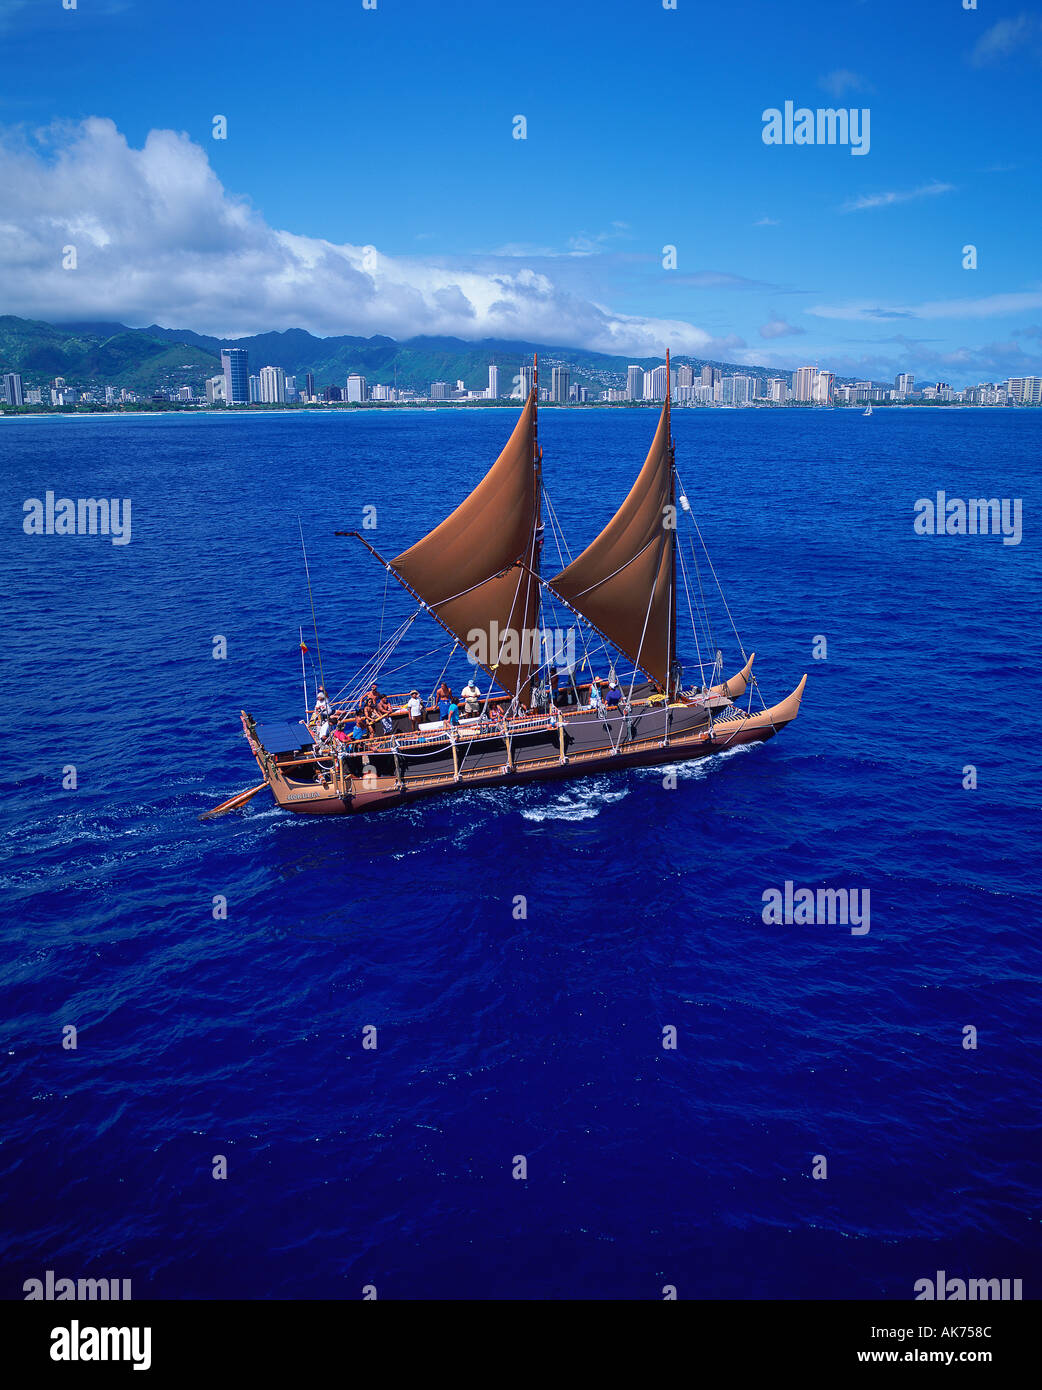 Hokulea Sailing Canoe Oahu Hawaii editorial use only Stock Photo - Alamy